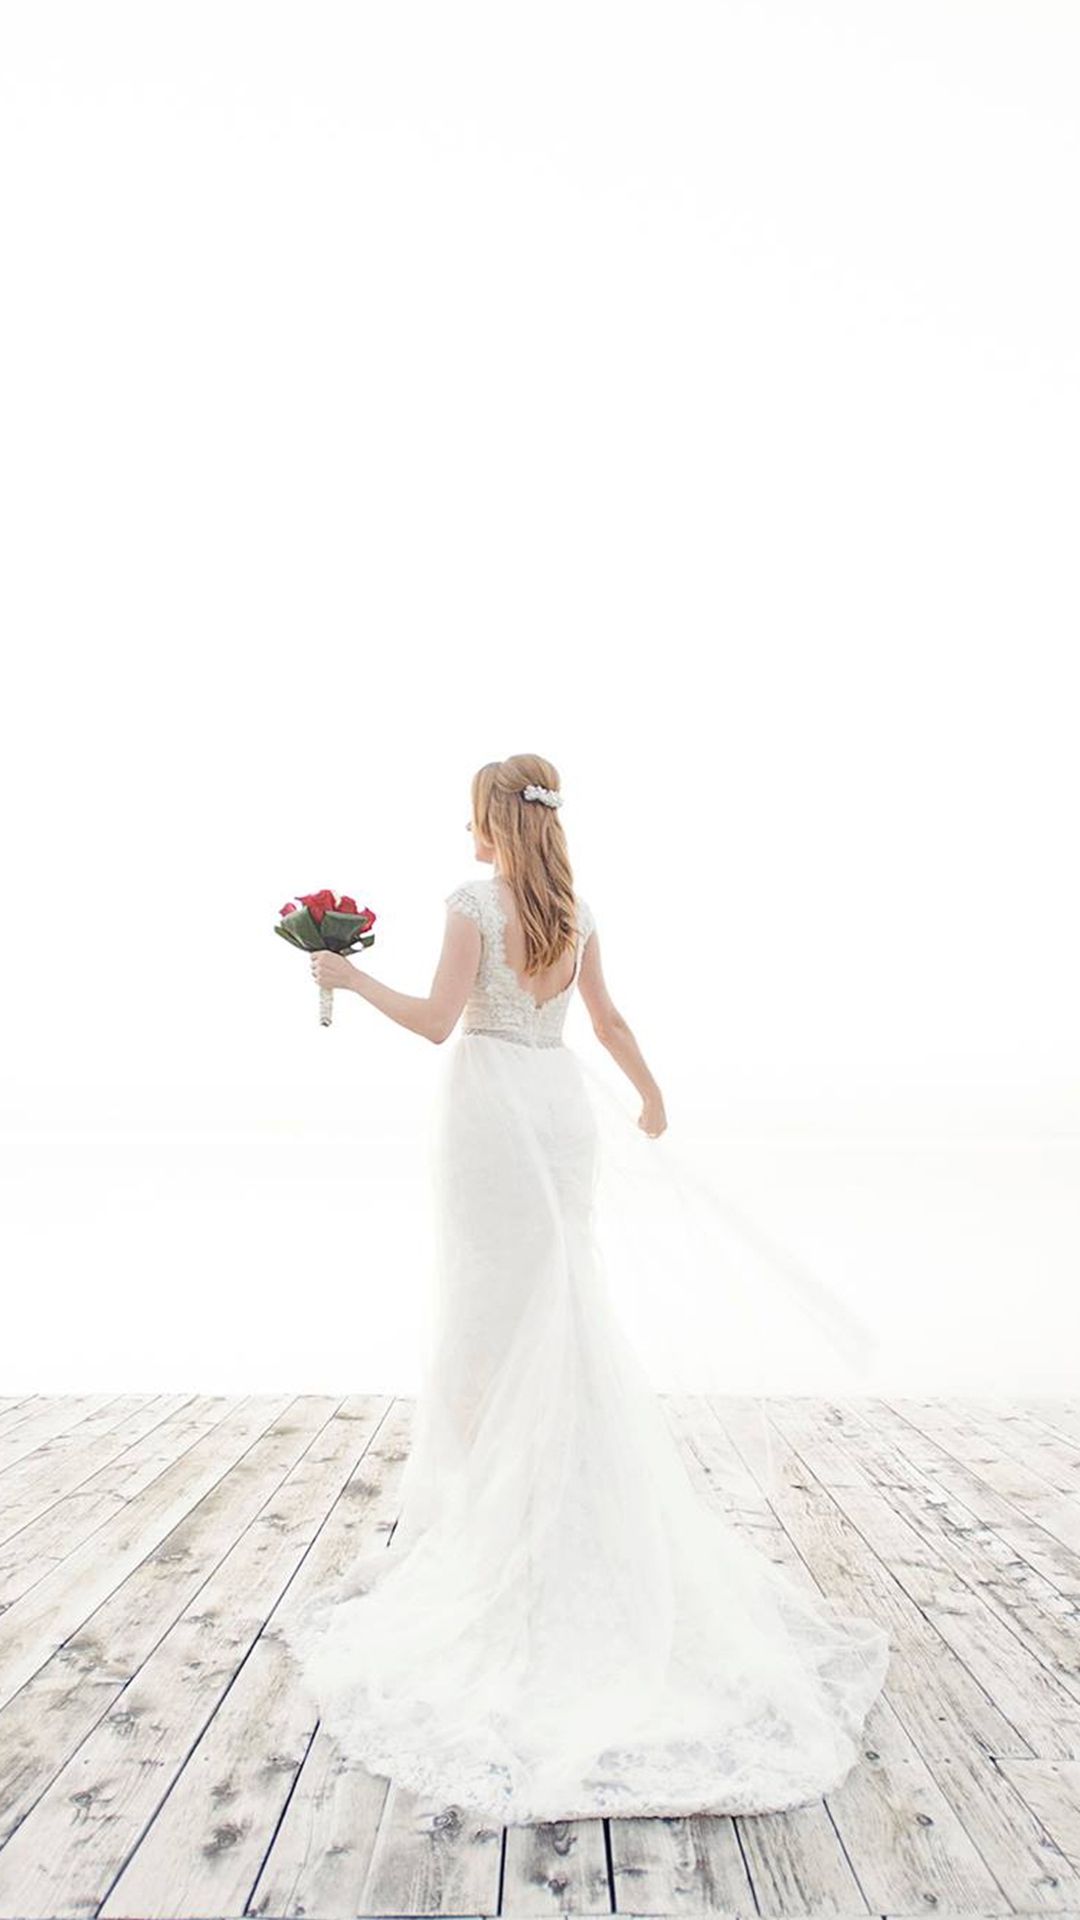 Beautiful Wedding Dress Photography .ilikewallpaper.net